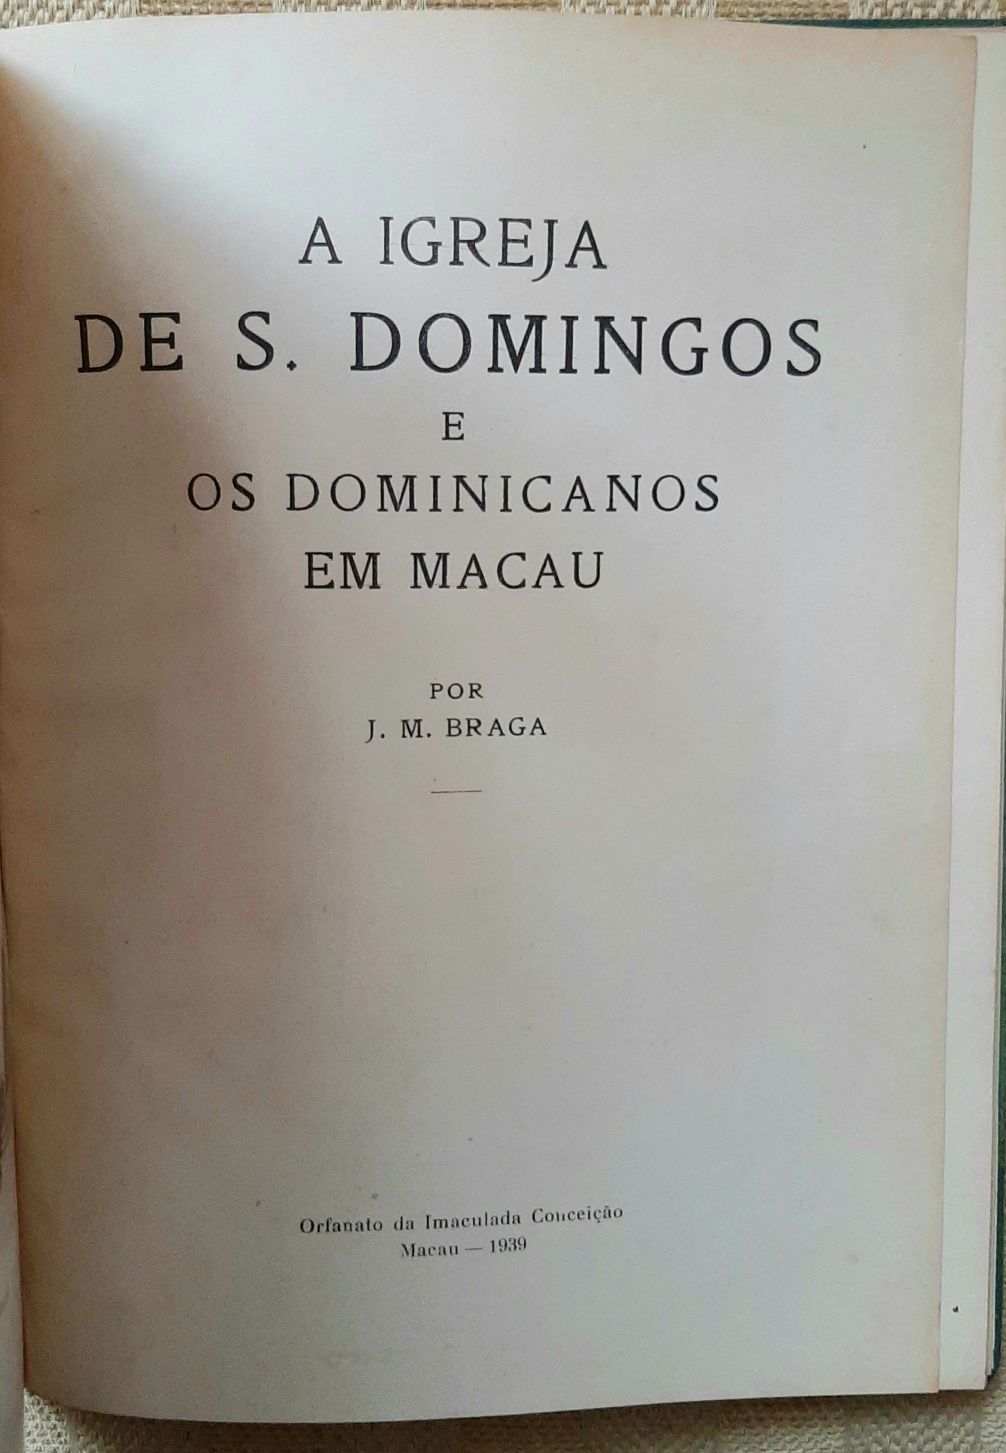 A Igreja S. Domingos e os Dominicanos em Macau / J.M.Braga 1939 raro